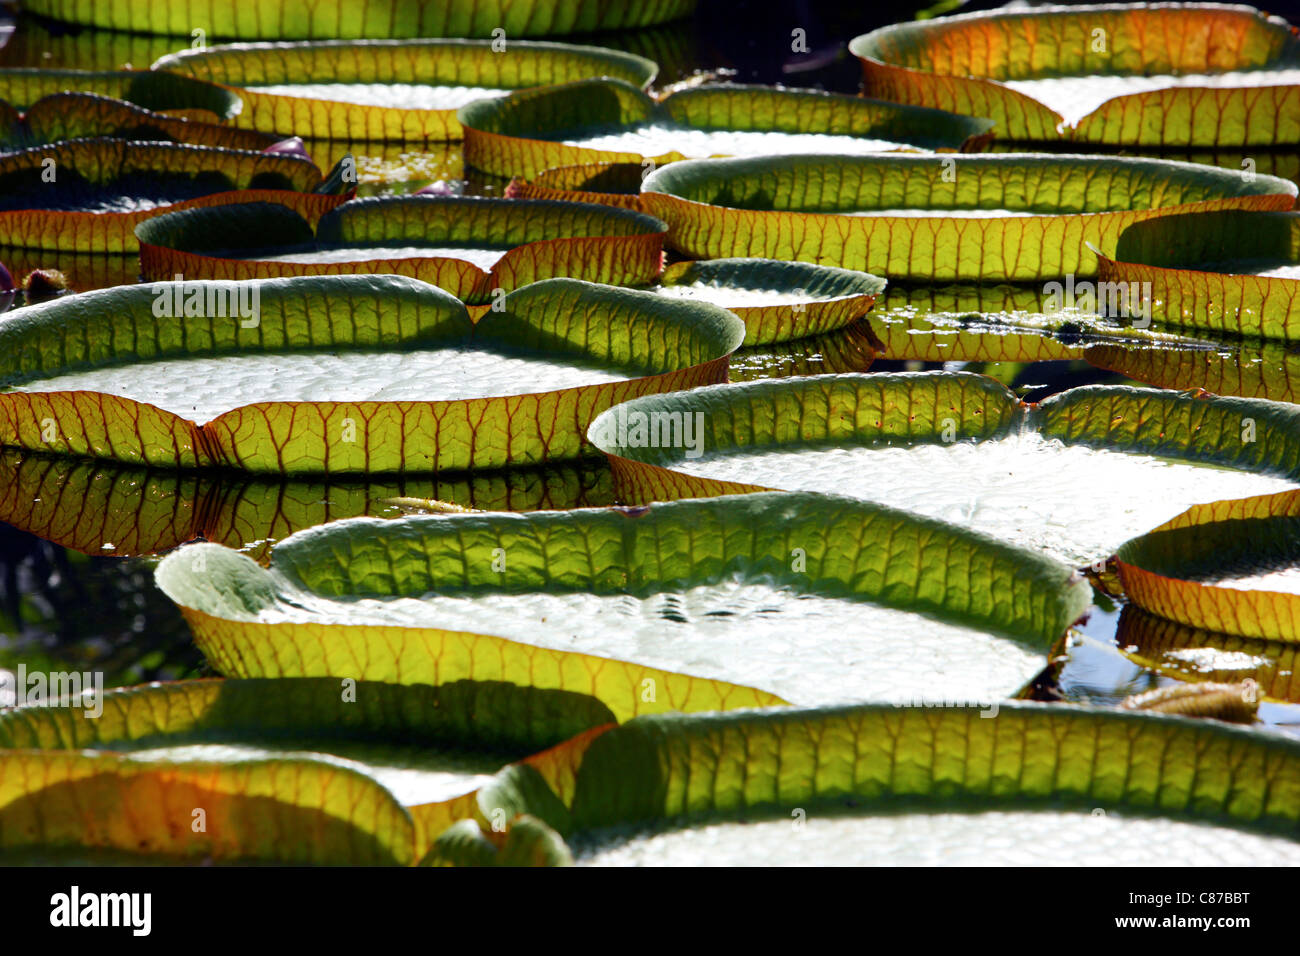 Victoria es un género de lirios de agua, con grandes hojas verdes que flotan en la superficie del agua. Foto de stock